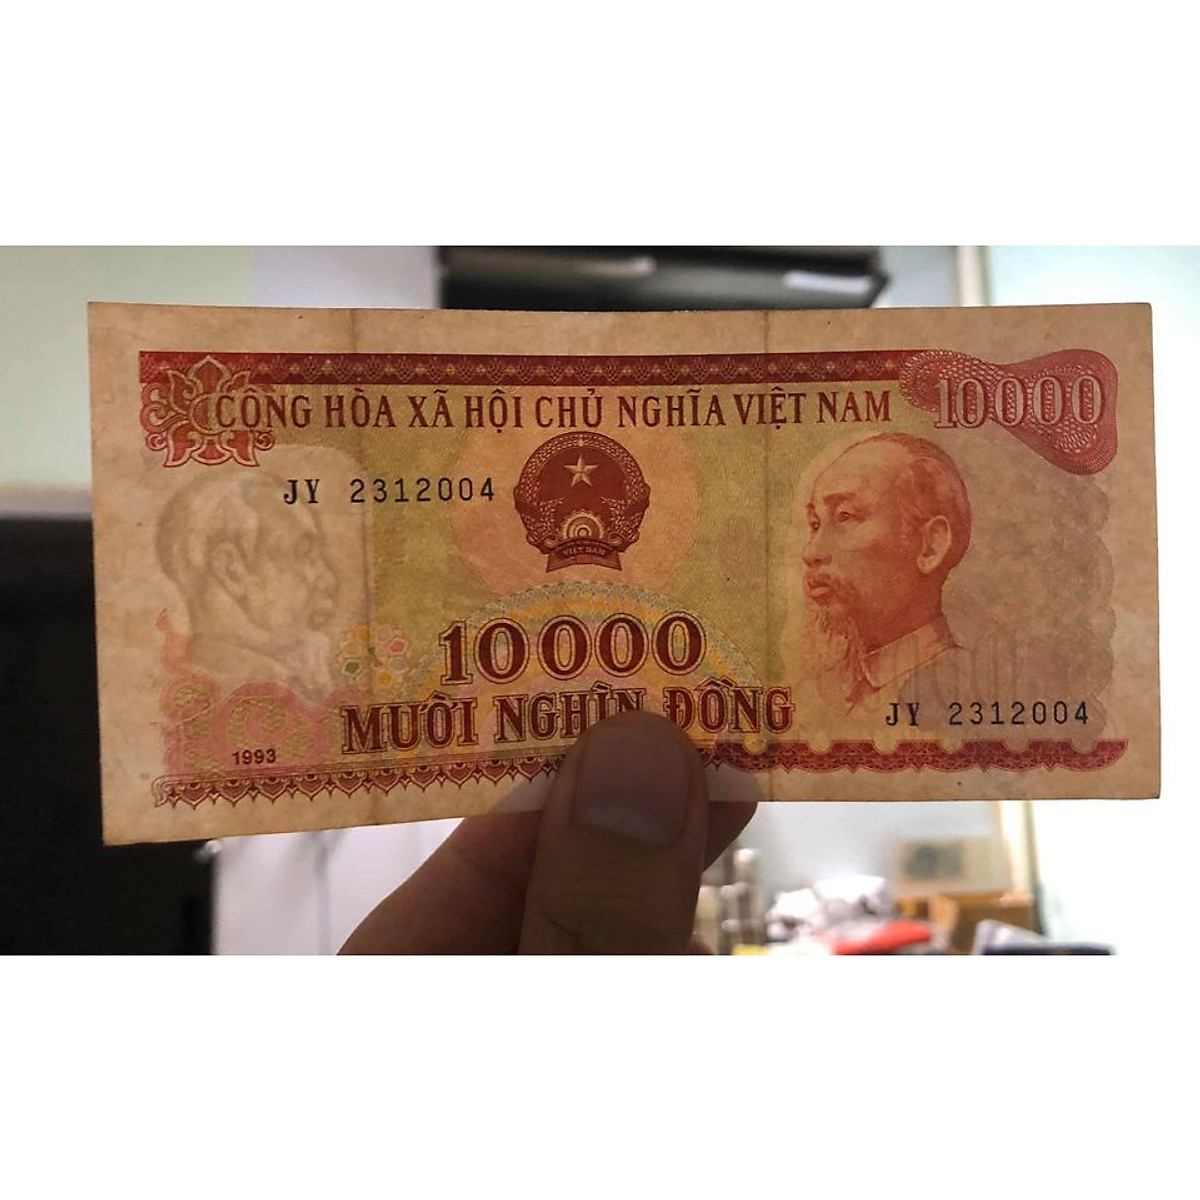 Tờ 10000 đồng - Tờ tiền 10.000 đồng Việt Nam mang lại cho người xem một sự độc đáo của thiết kế với hình ảnh Chủ tịch Hồ Chí Minh. Hãy xem hình ảnh này để tìm hiểu thêm về ý nghĩa văn hóa của nó và sự phát triển về kinh tế cũng như văn hóa của Việt Nam.